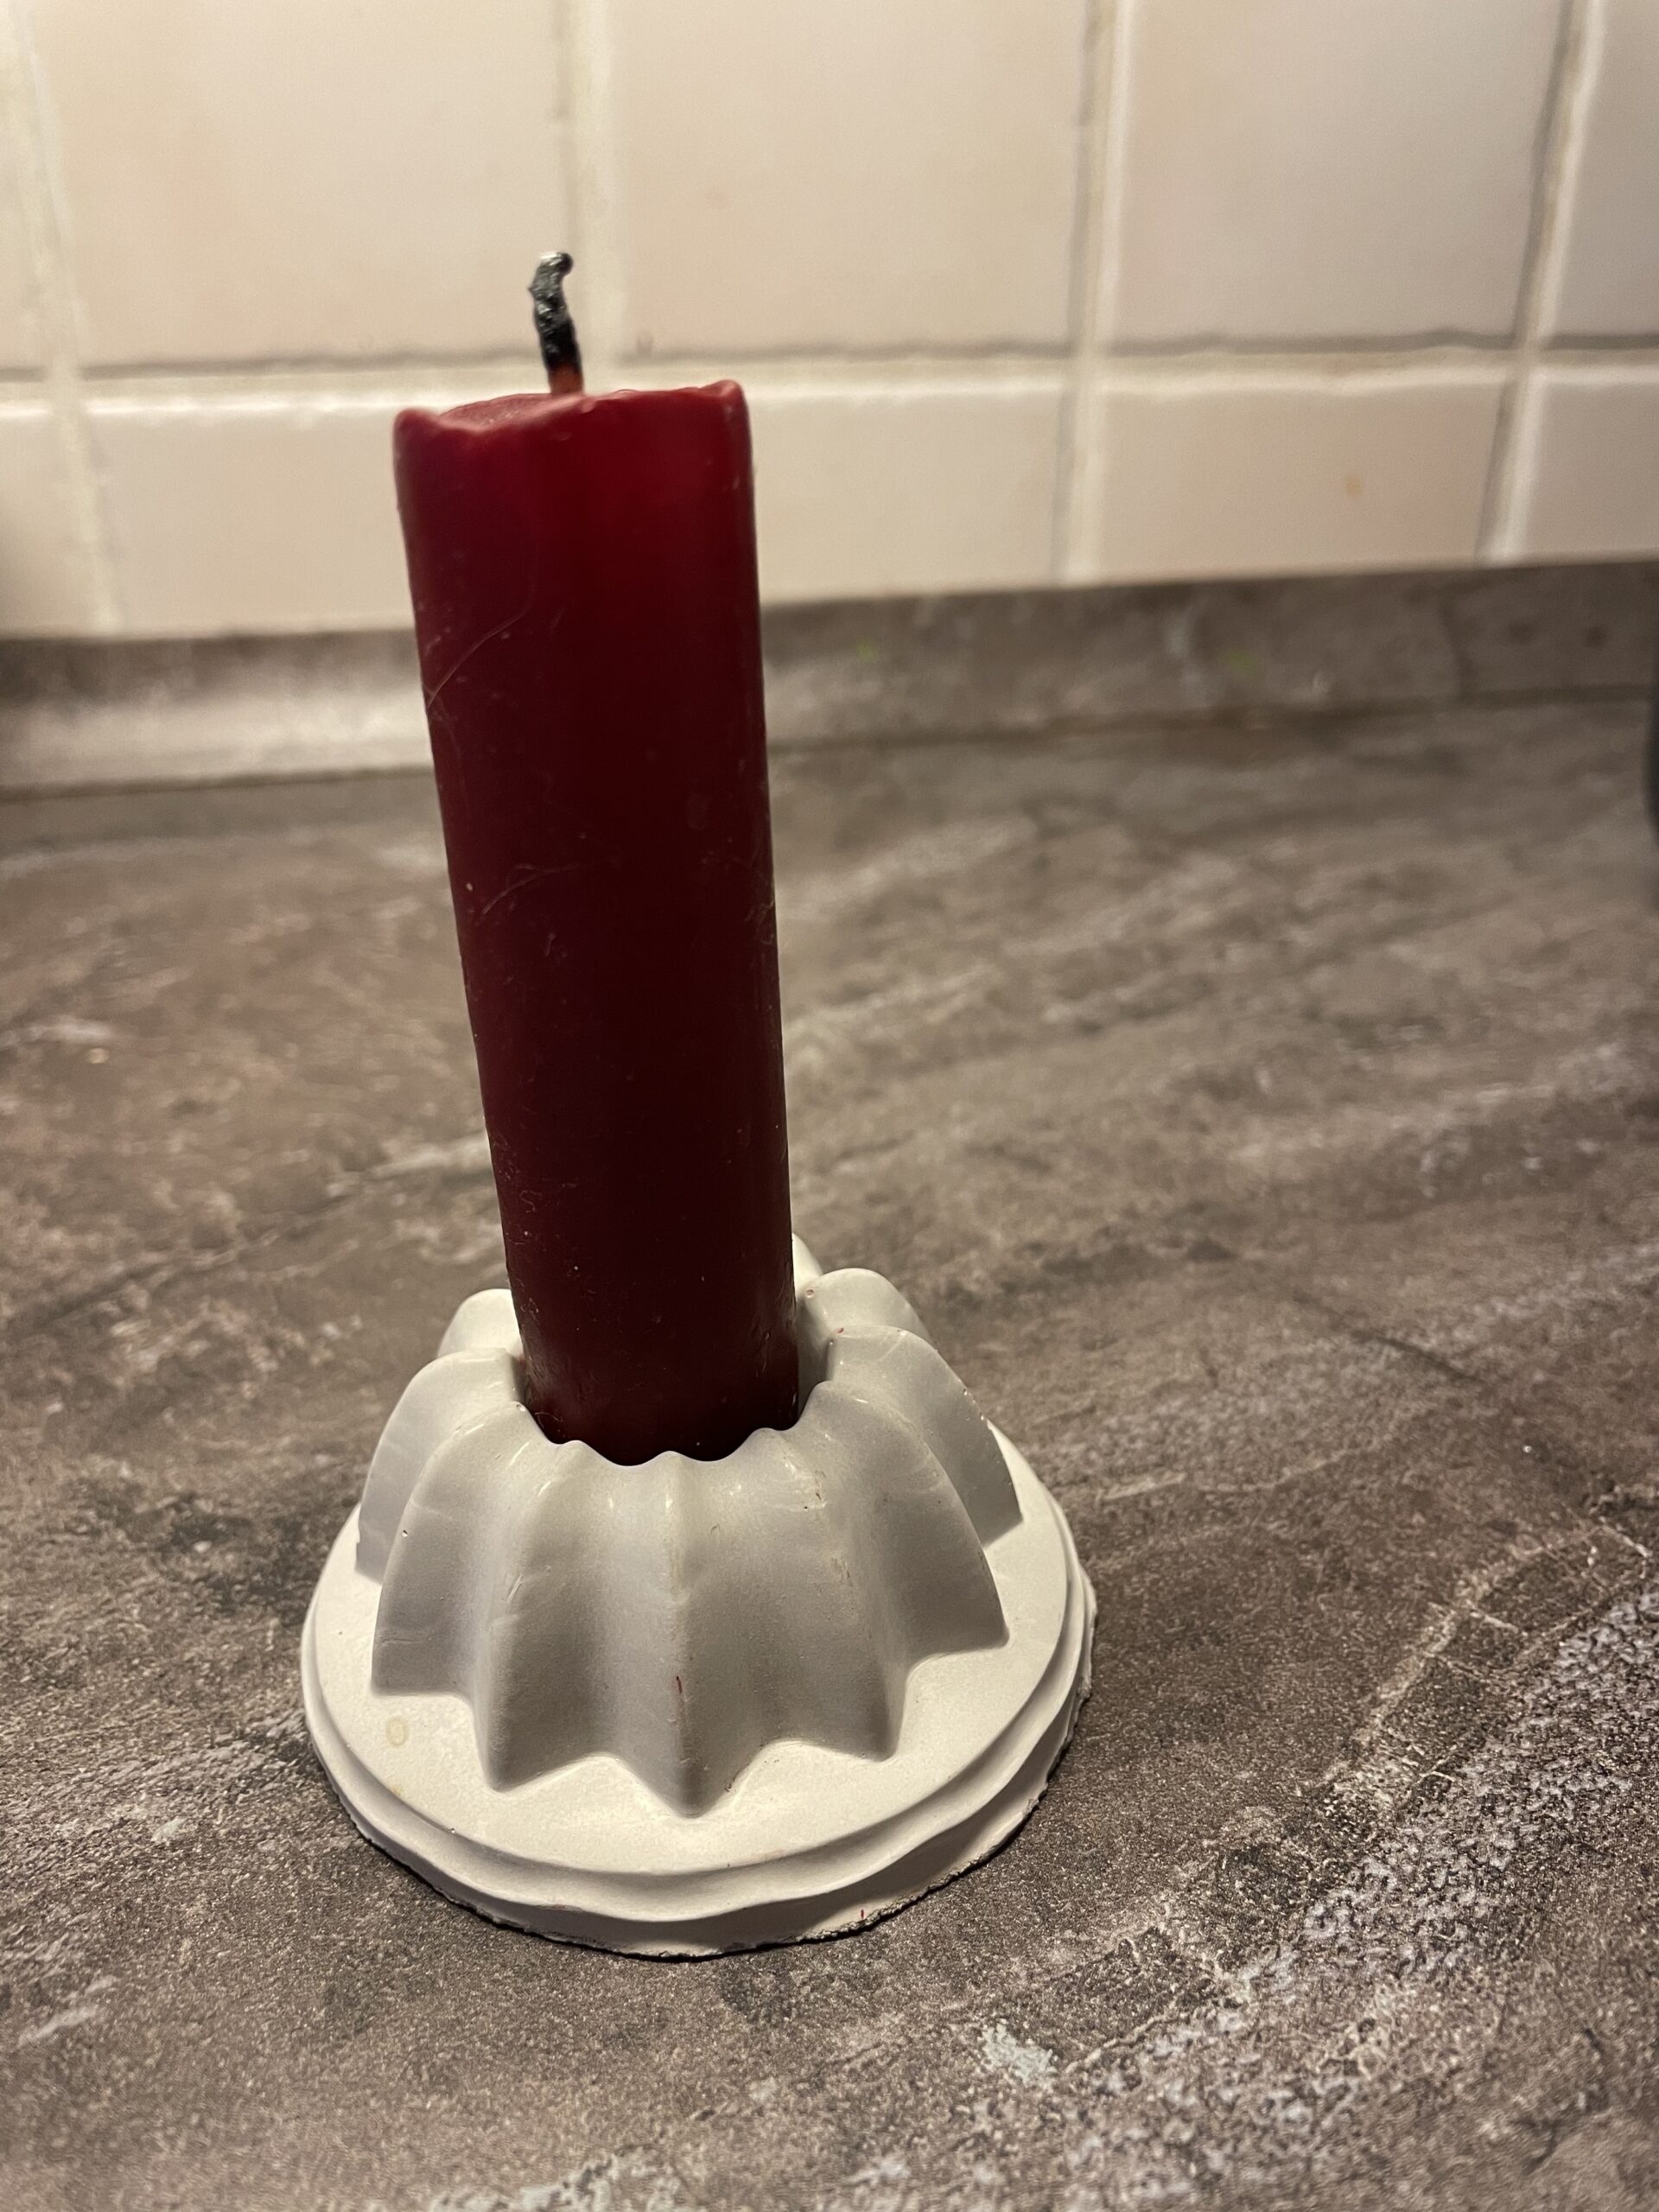 Bild zum Schritt 14 für das Bastel- und DIY-Abenteuer für Kinder: 'Abschließend stellt ihr eine schlanke Kerze in der Mitte des...'